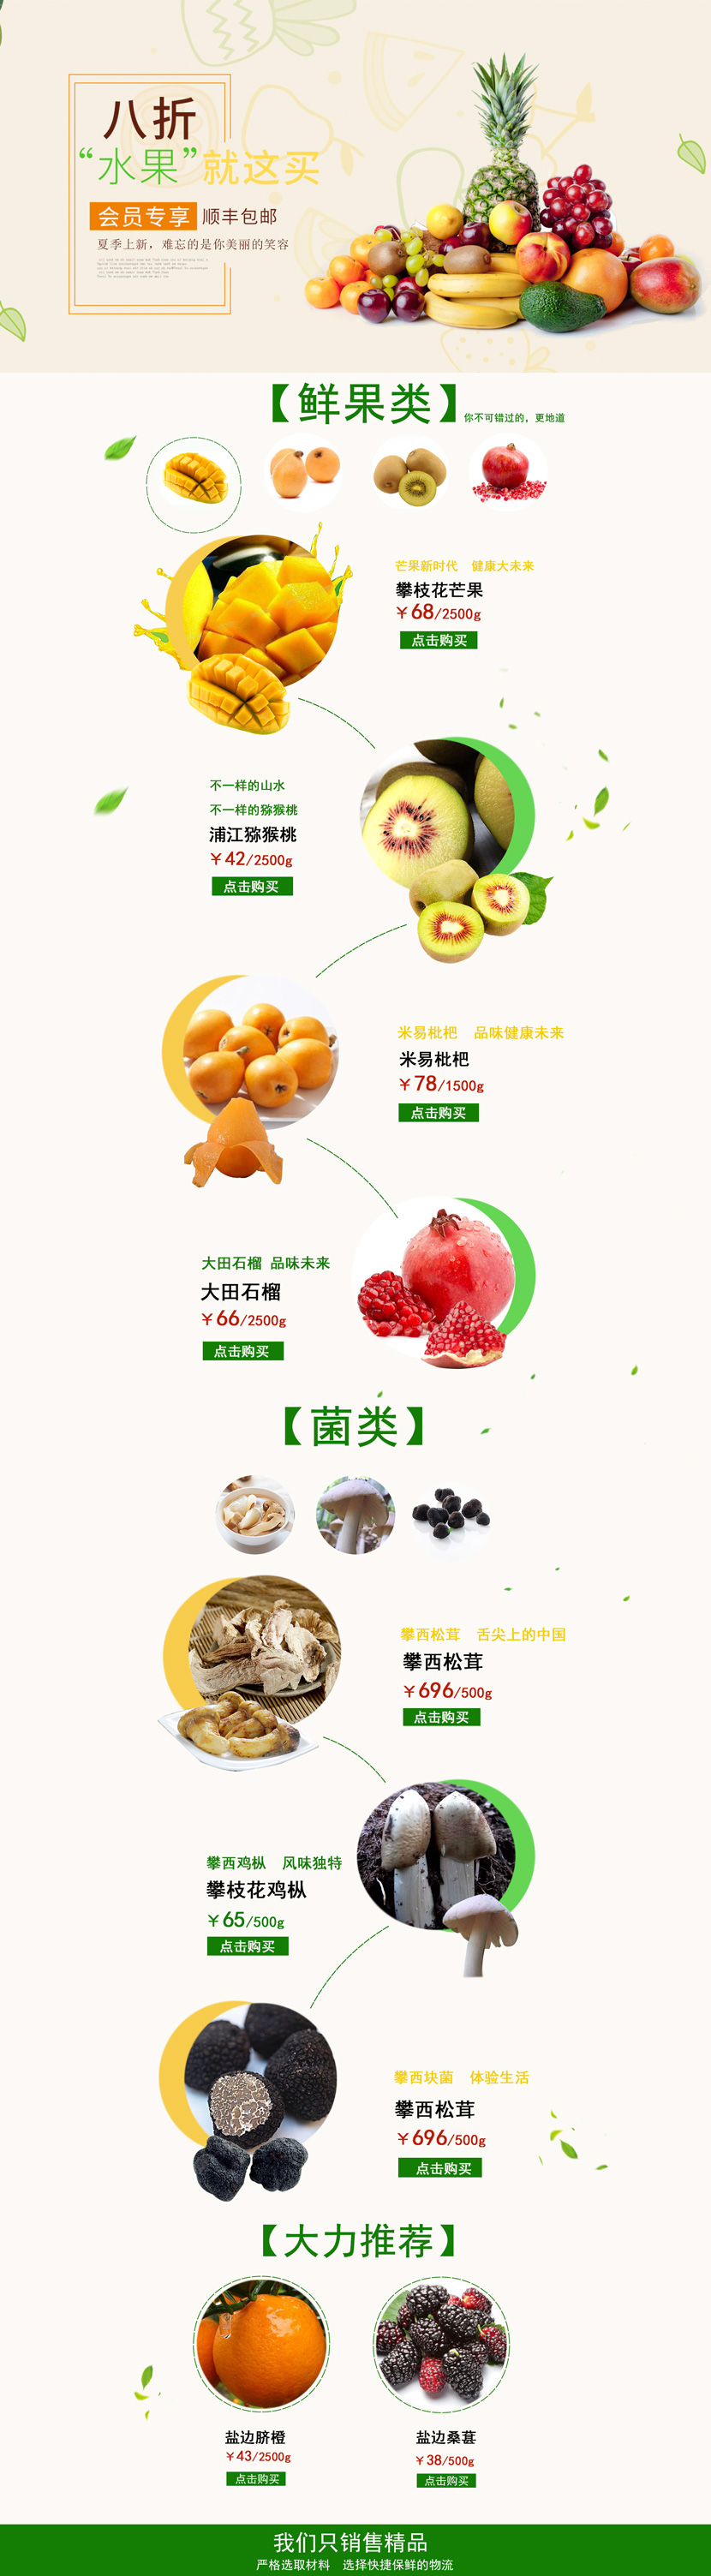 淘宝天猫水果食品零食首页设计模版